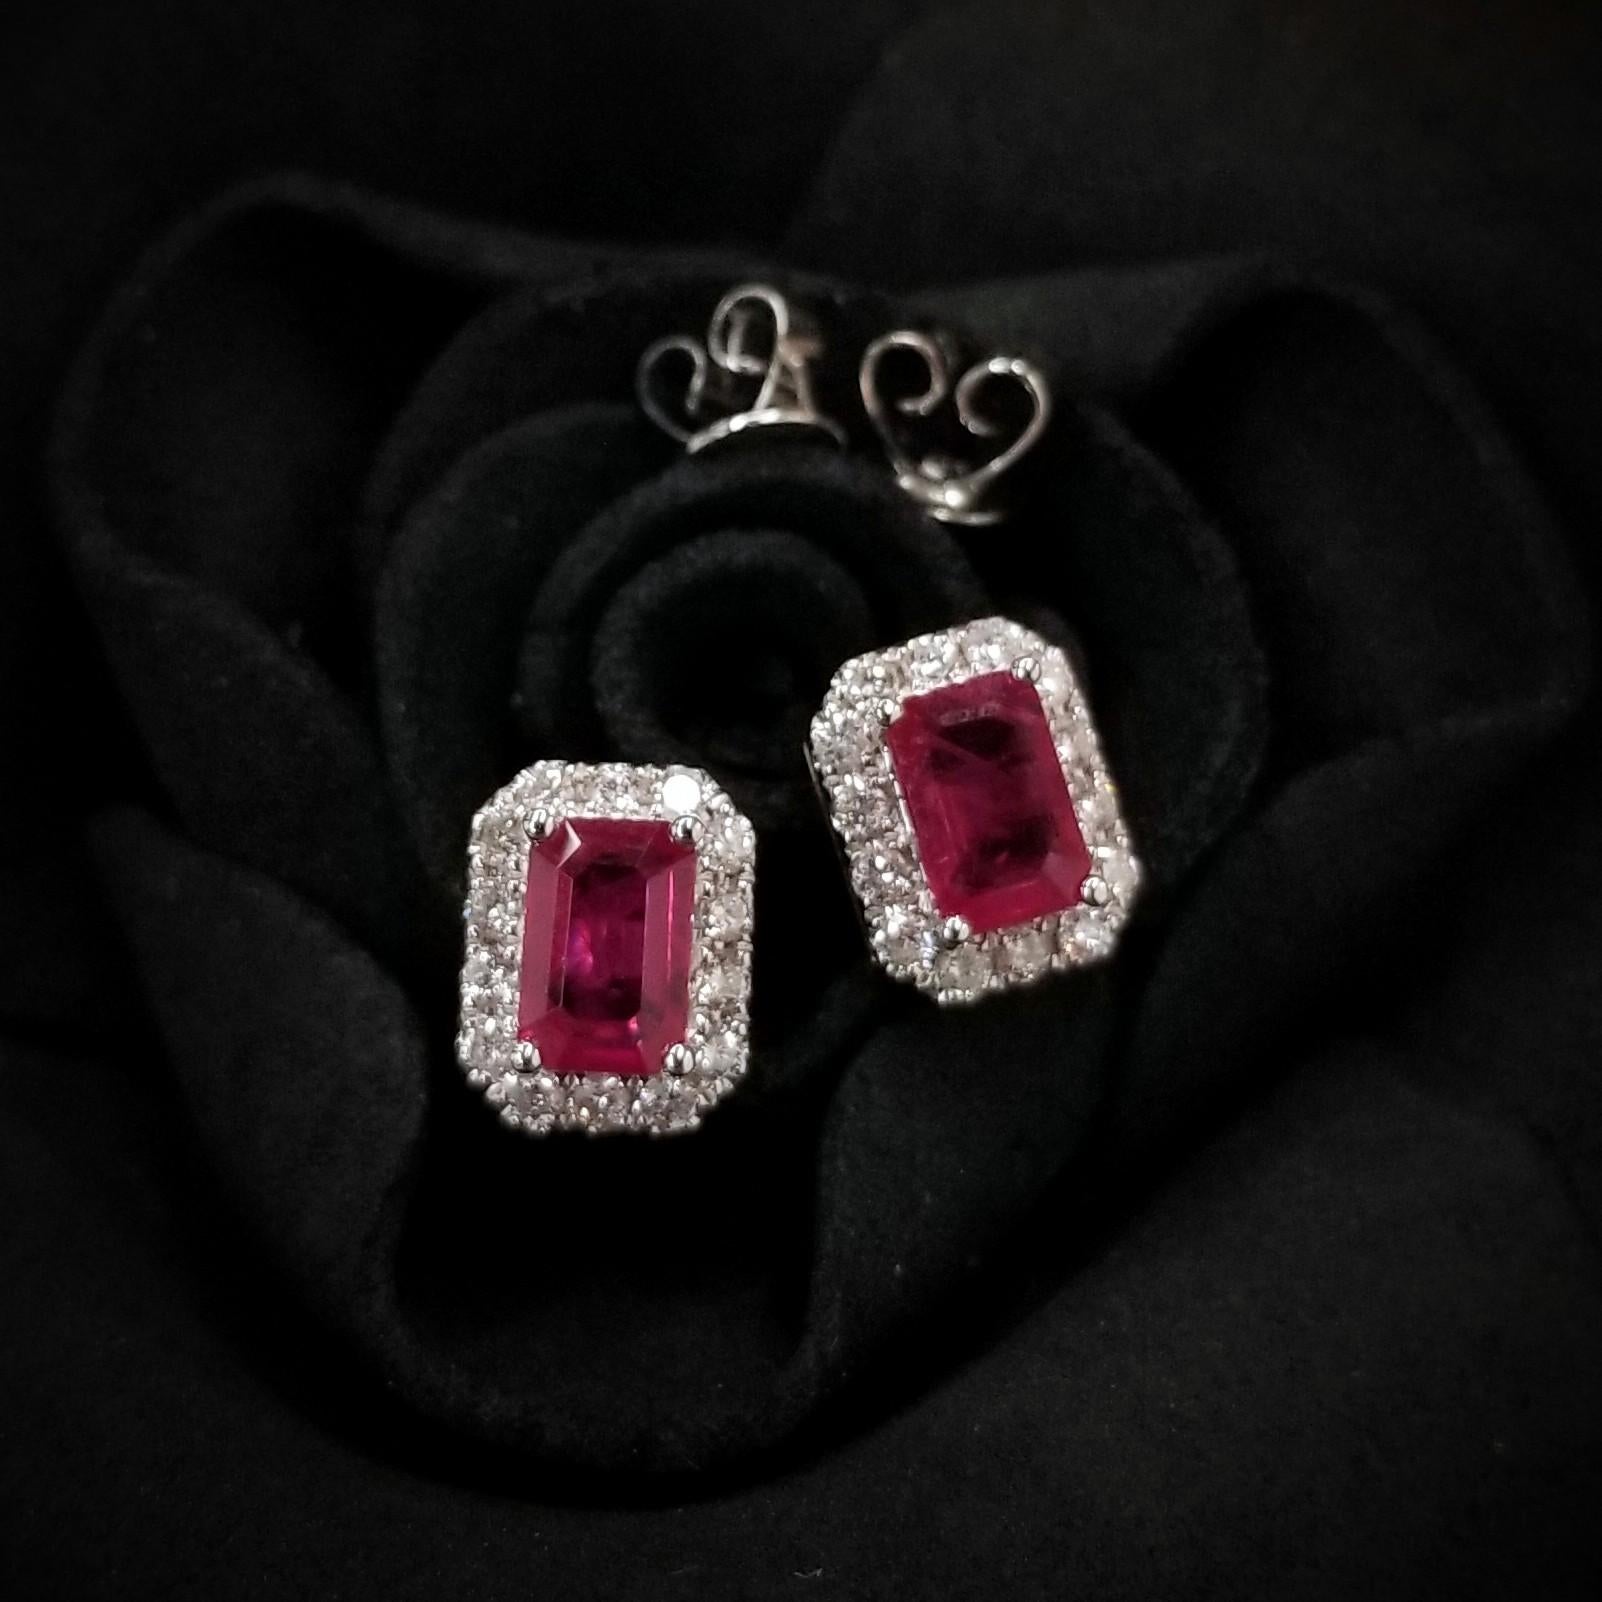 Women's or Men's IGI Certified 1.44 Carat Ruby & 0.32 Carat Diamond Earrings in 18K White Gold For Sale